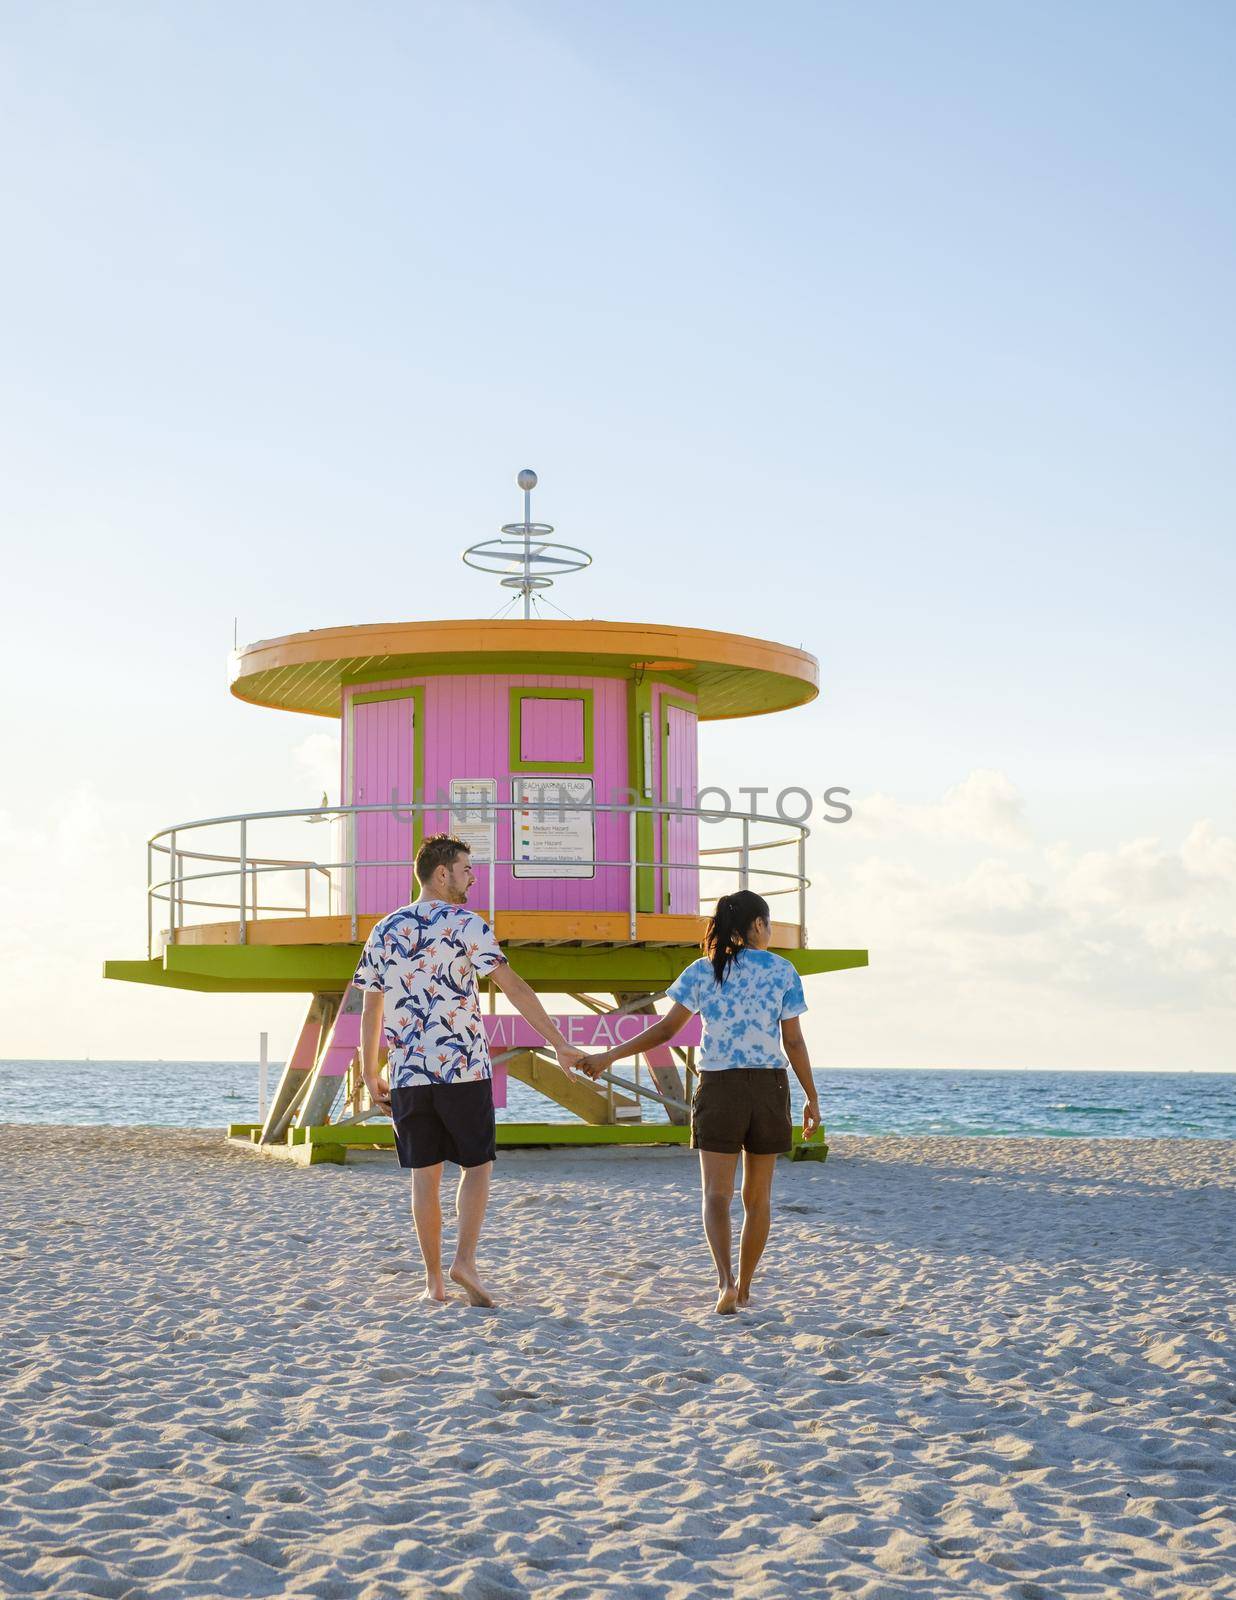 Miami beach, couple on the beach at Miami beach, life guard hut Miami beach Florida by fokkebok